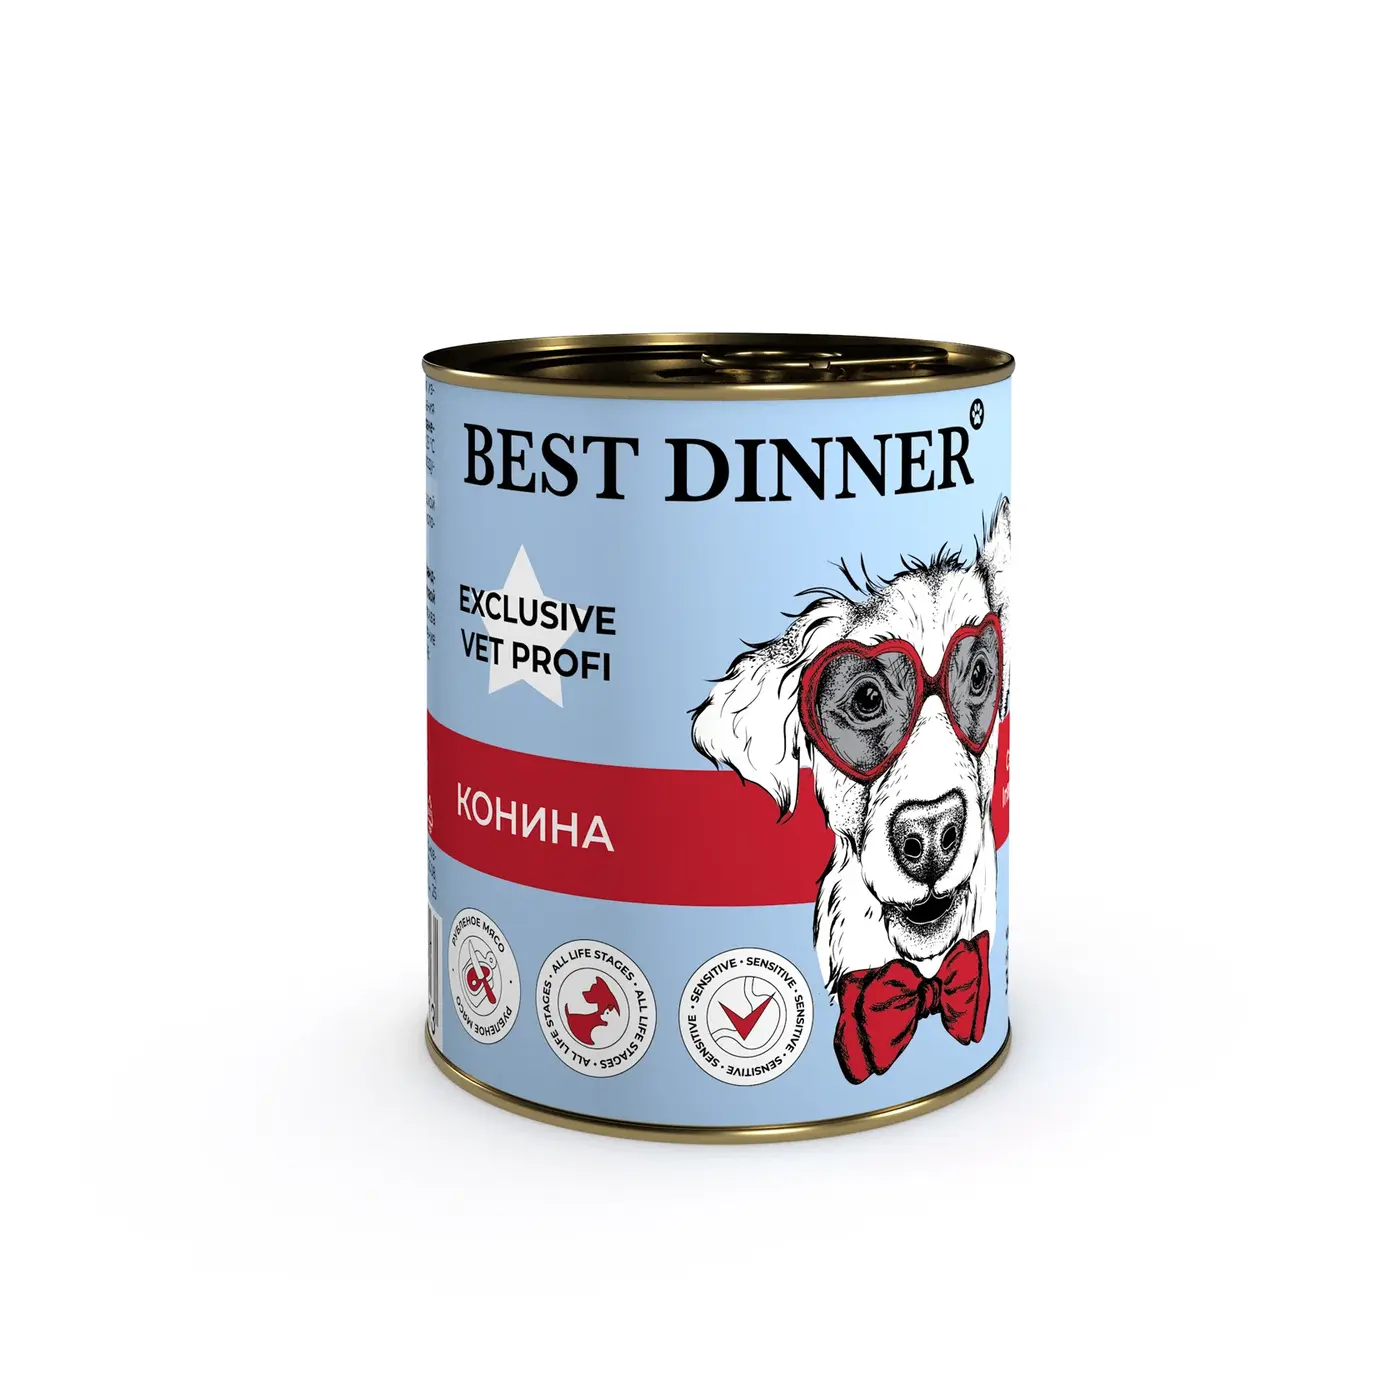 BEST DINNER Exclusive Gastro Intestinal для собак при проблемах пищеварения с кониной 340 г